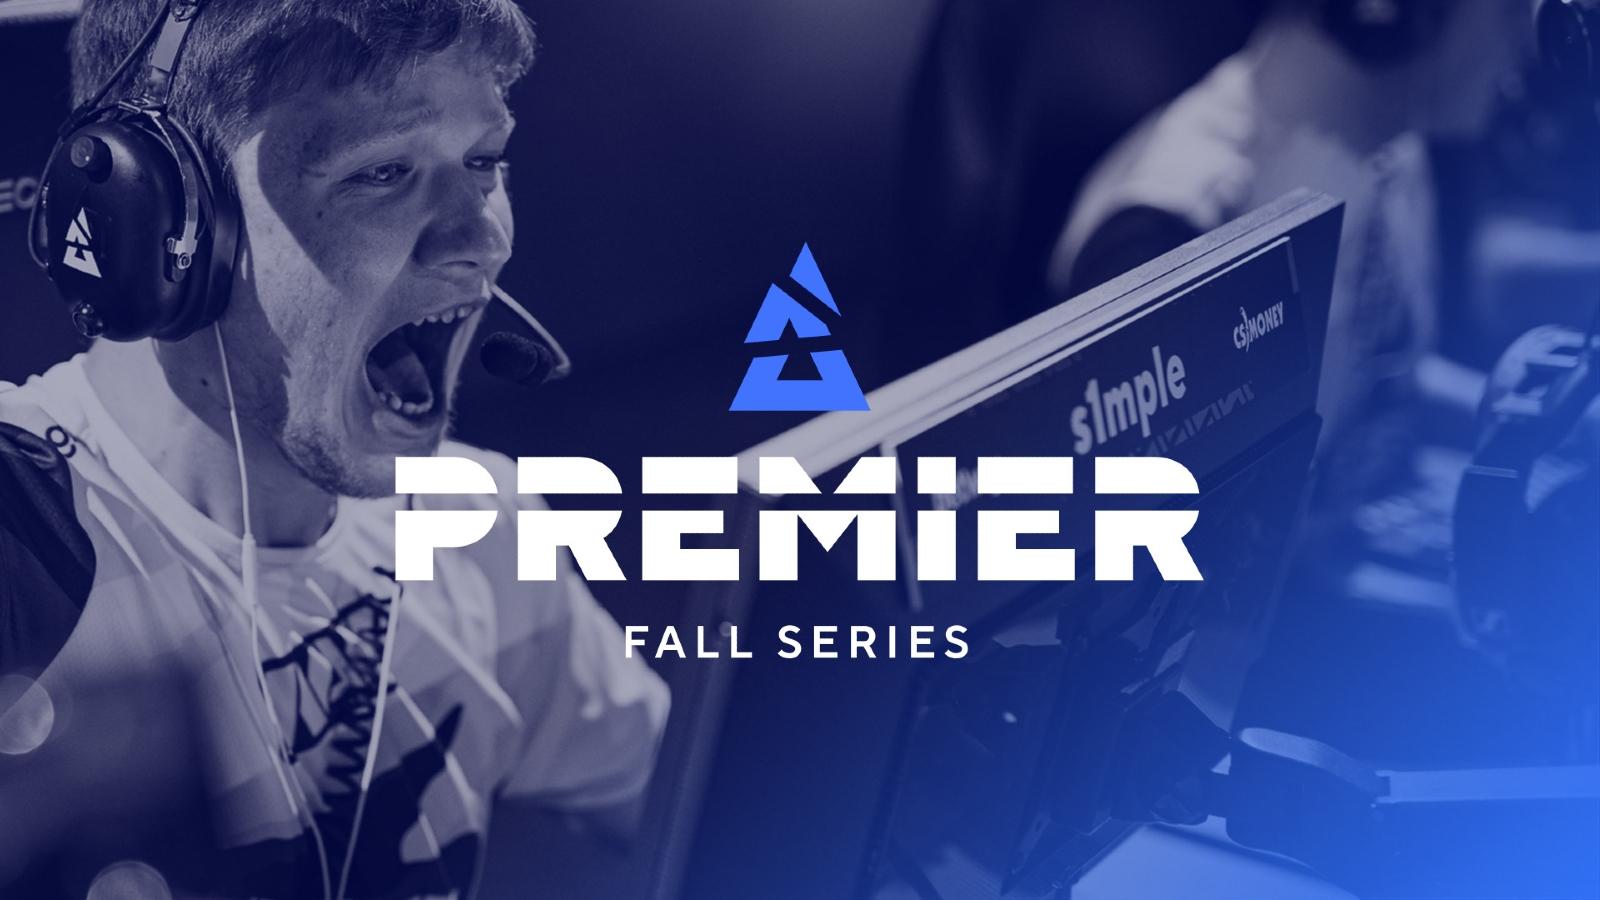 BLAST Premier Fall Series Finals s1mple